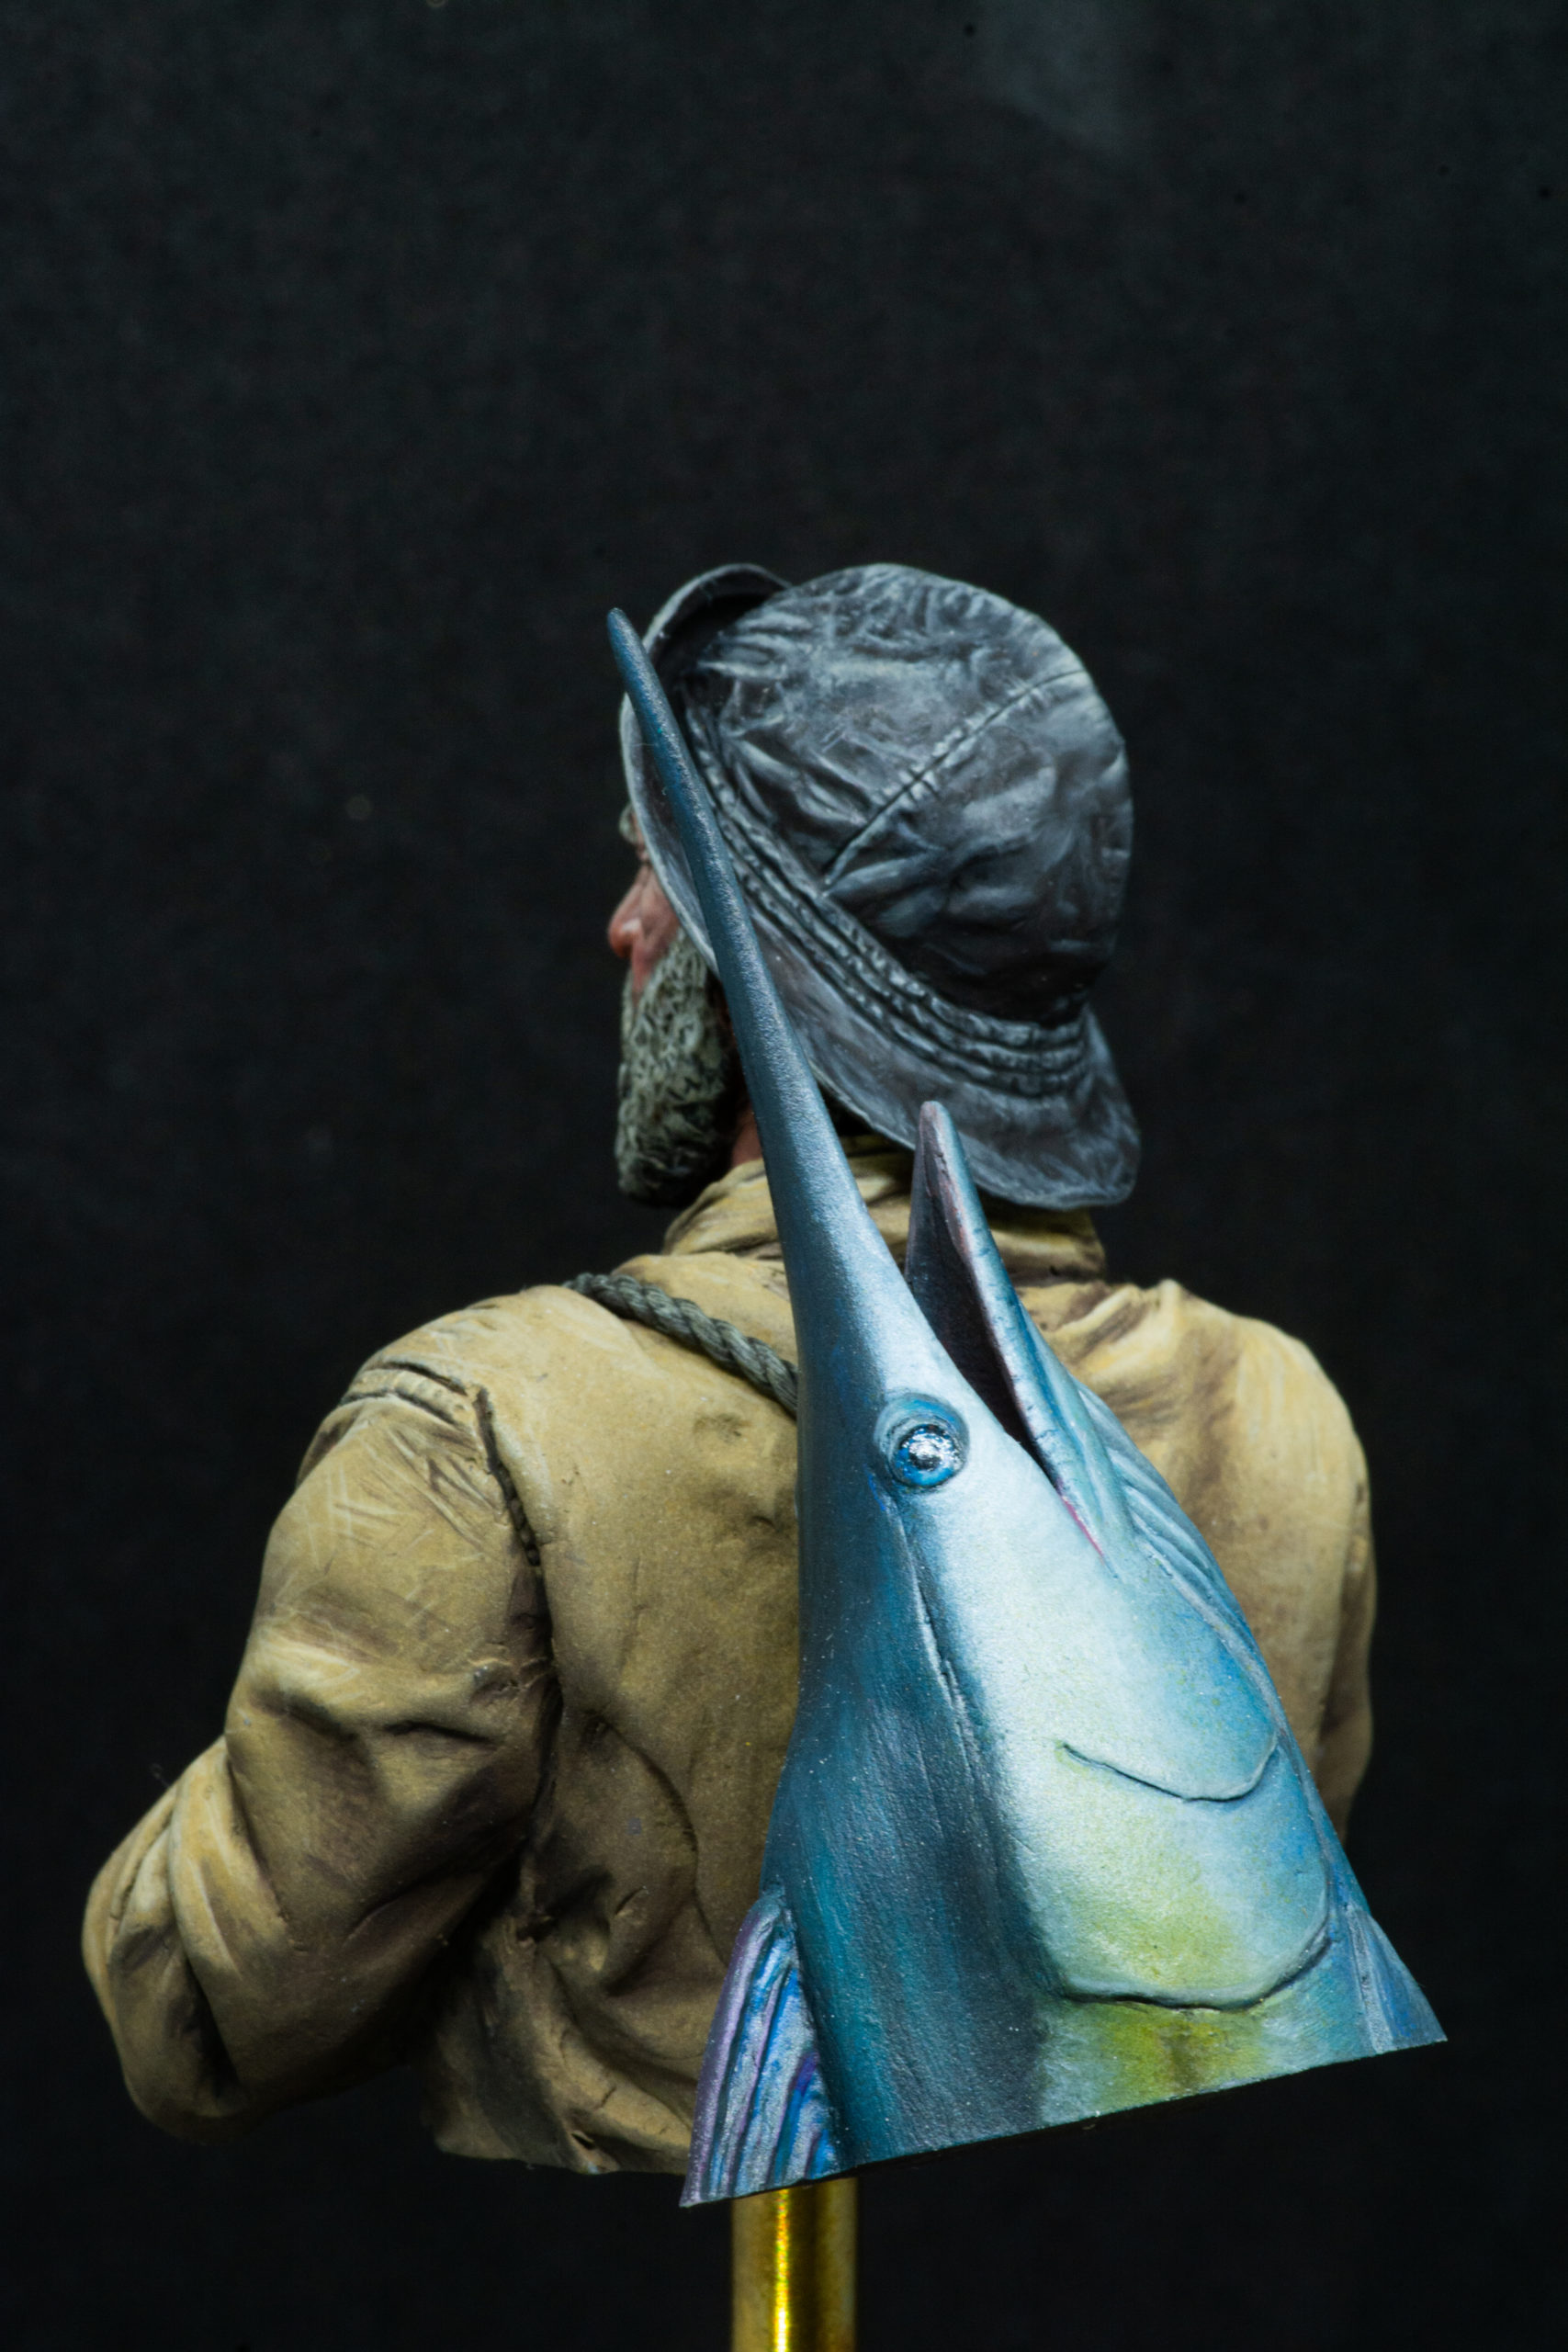 El Pescador